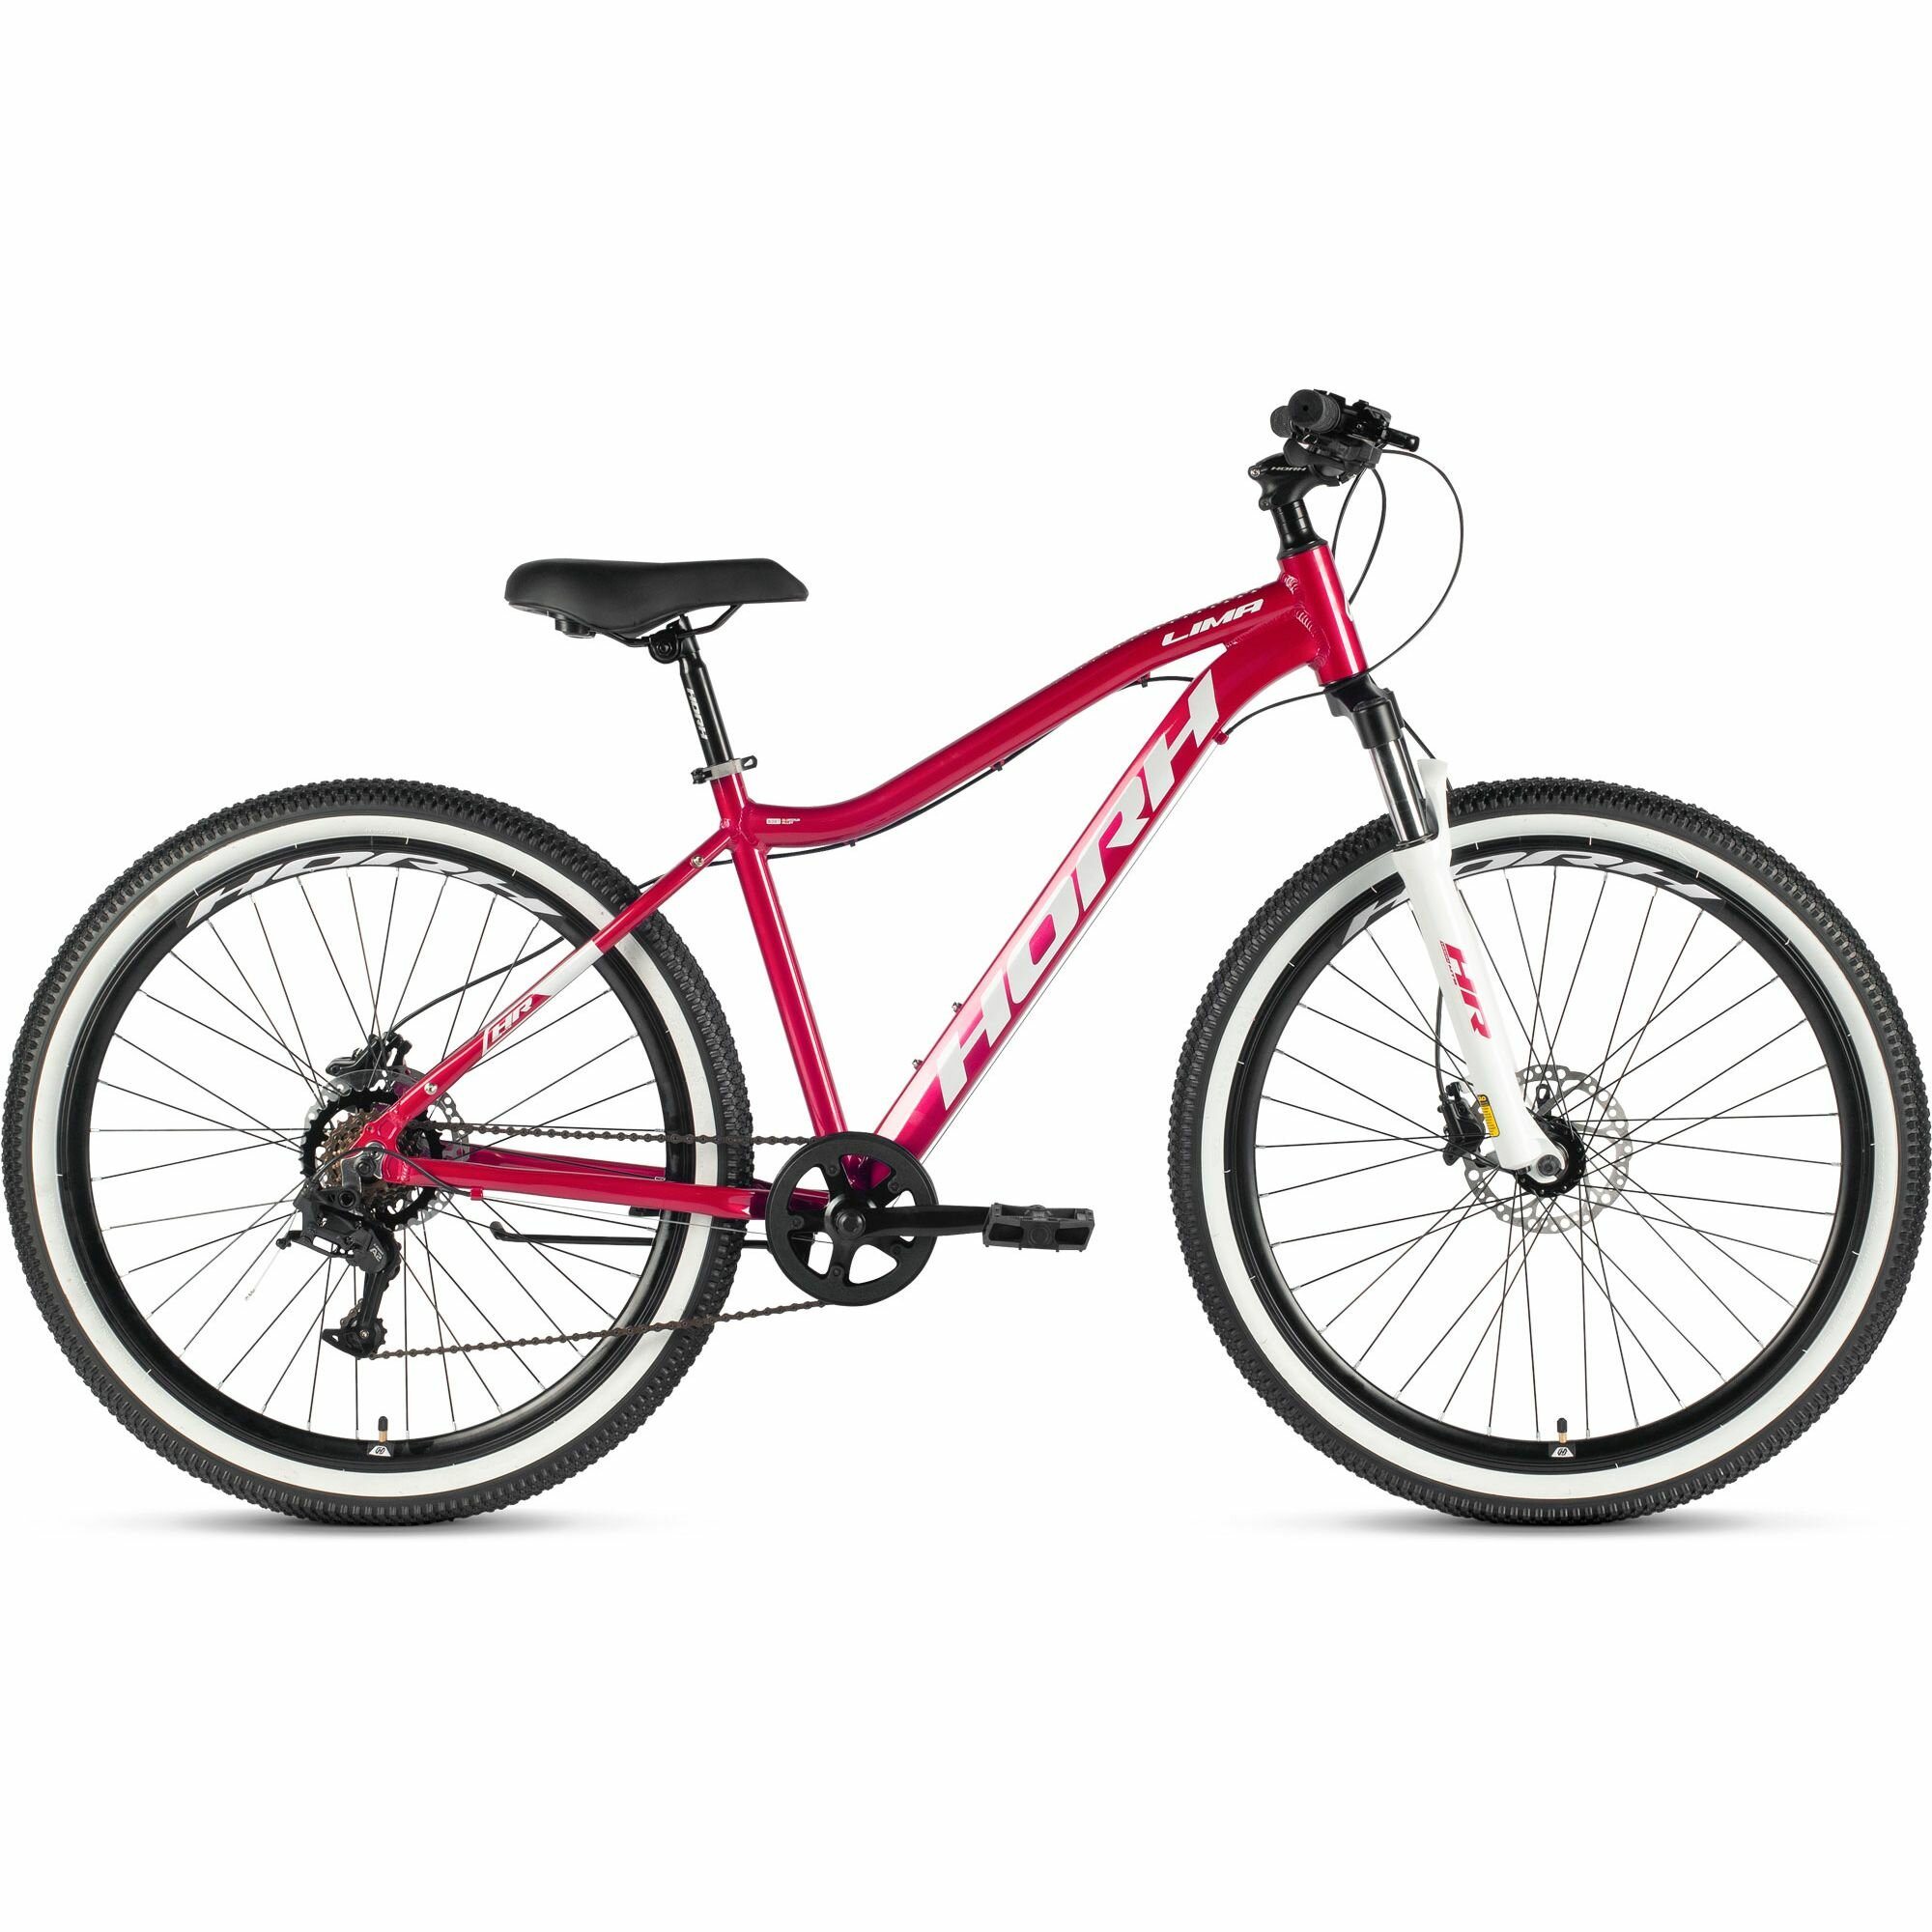 Велосипед горный HORH LIMA LHD 7.0 27.5 (2024), хардтейл, взрослый, женский, алюминиевая рама, оборудование L-Twoo, 9 скоростей, дисковые гидравлические тормоза, цвет Berry-White, розовый/белый цвет, размер рамы 17", для роста 170-180 см